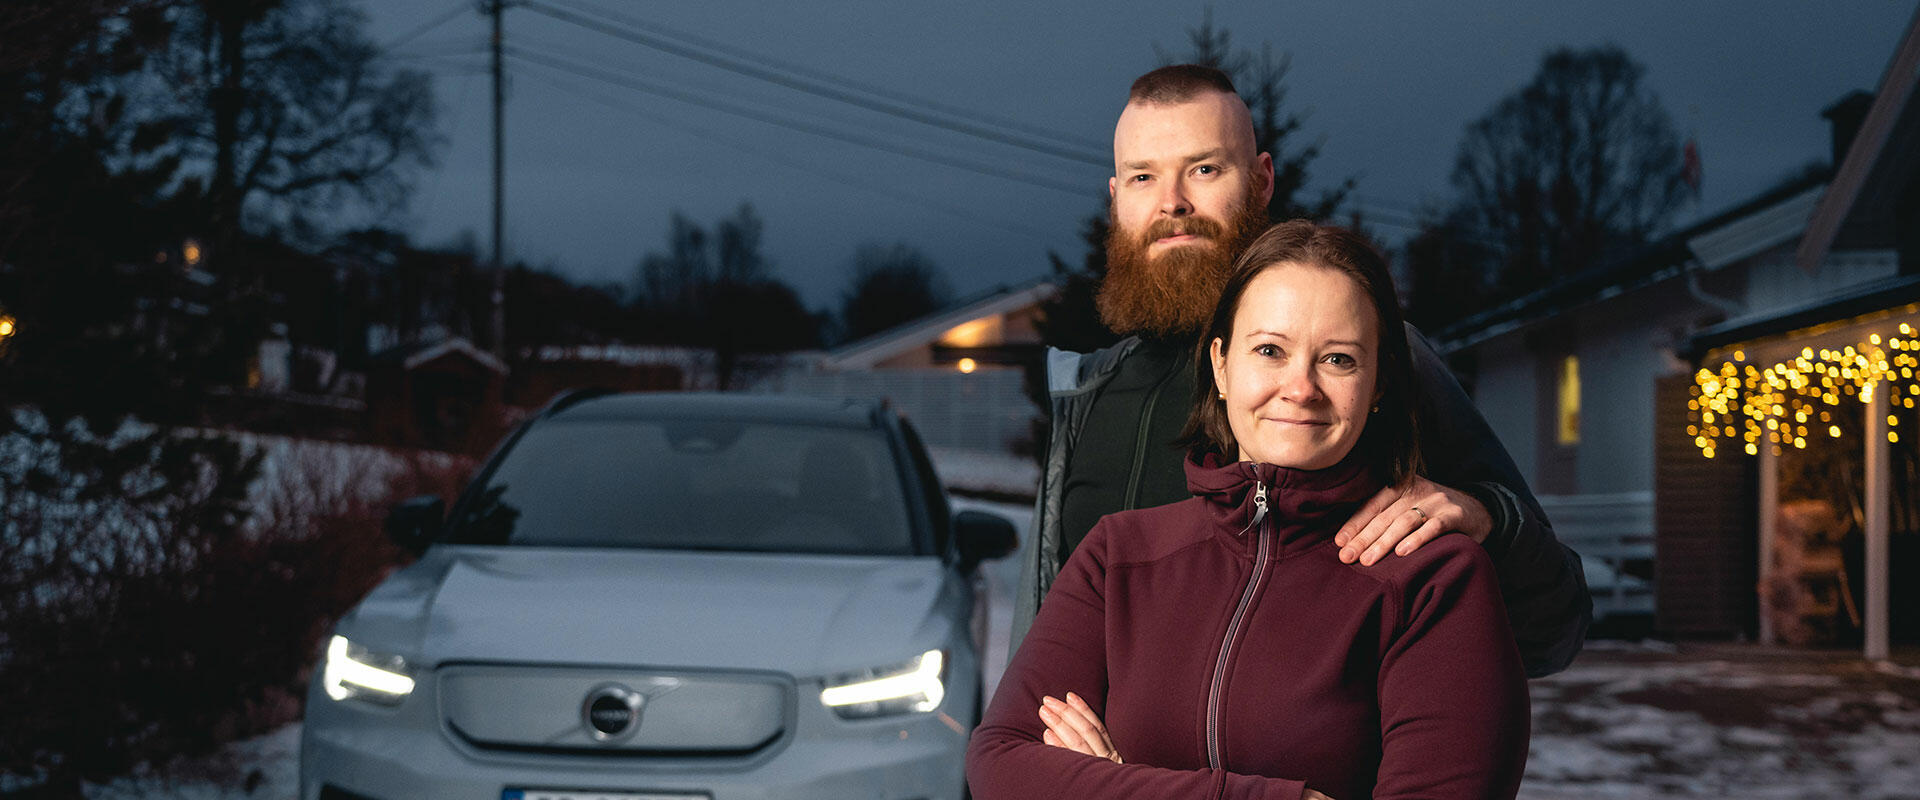 Tina og John foreteller om sin ny bil, en Volvo XC40 Pure Electric